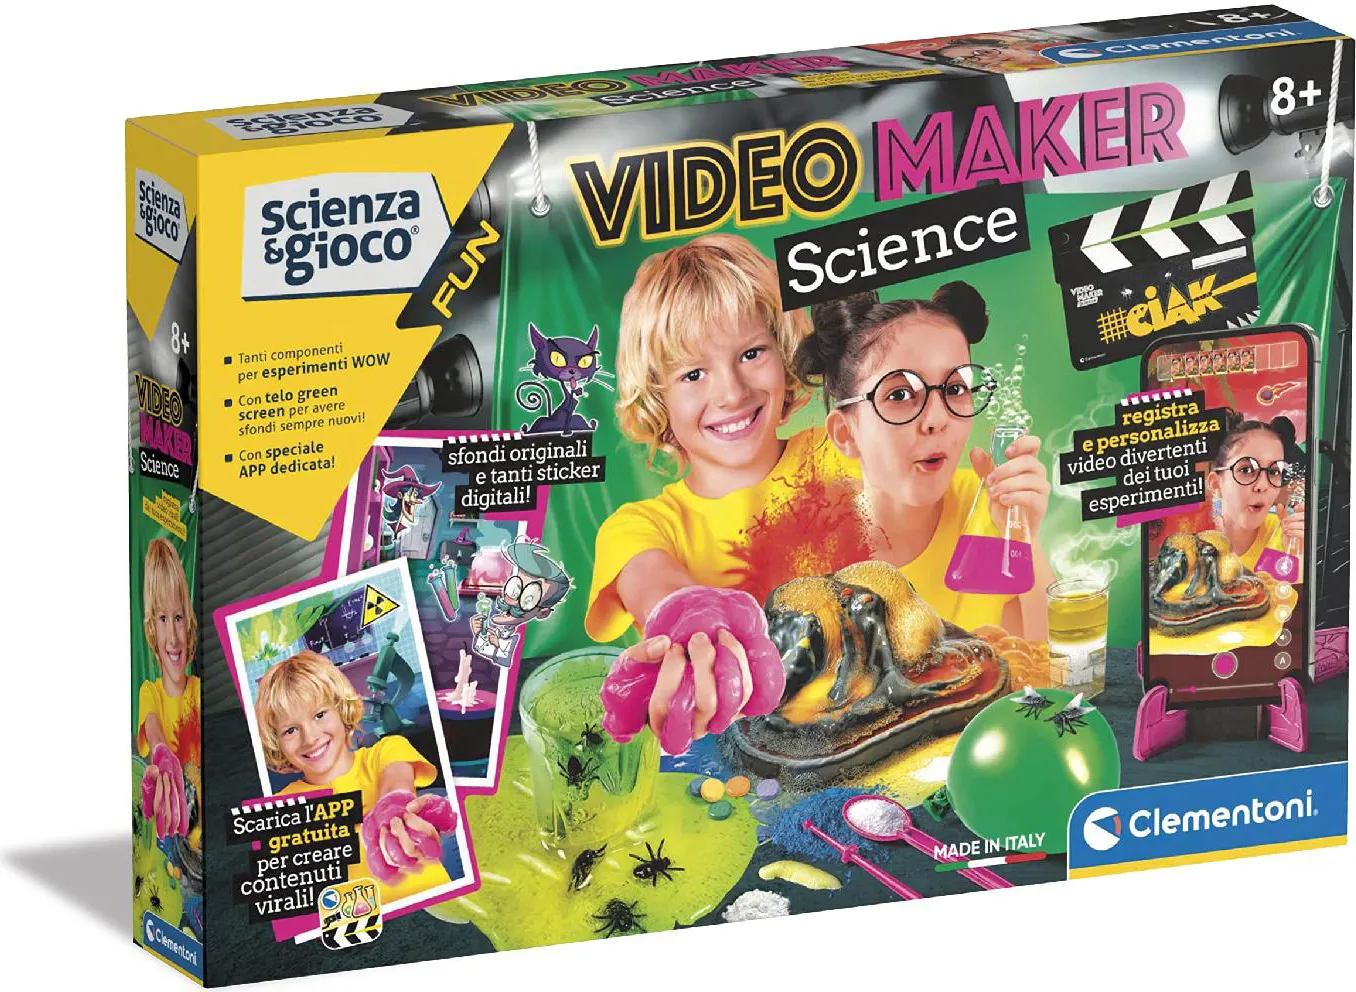 Clementoni Scienza e Gioco Video Maker Science - Laboratorio Bambini  Esperimenti di Scienza Gioco Scientifico Giocattolo per Bambini da 8+ Anni  - 19295